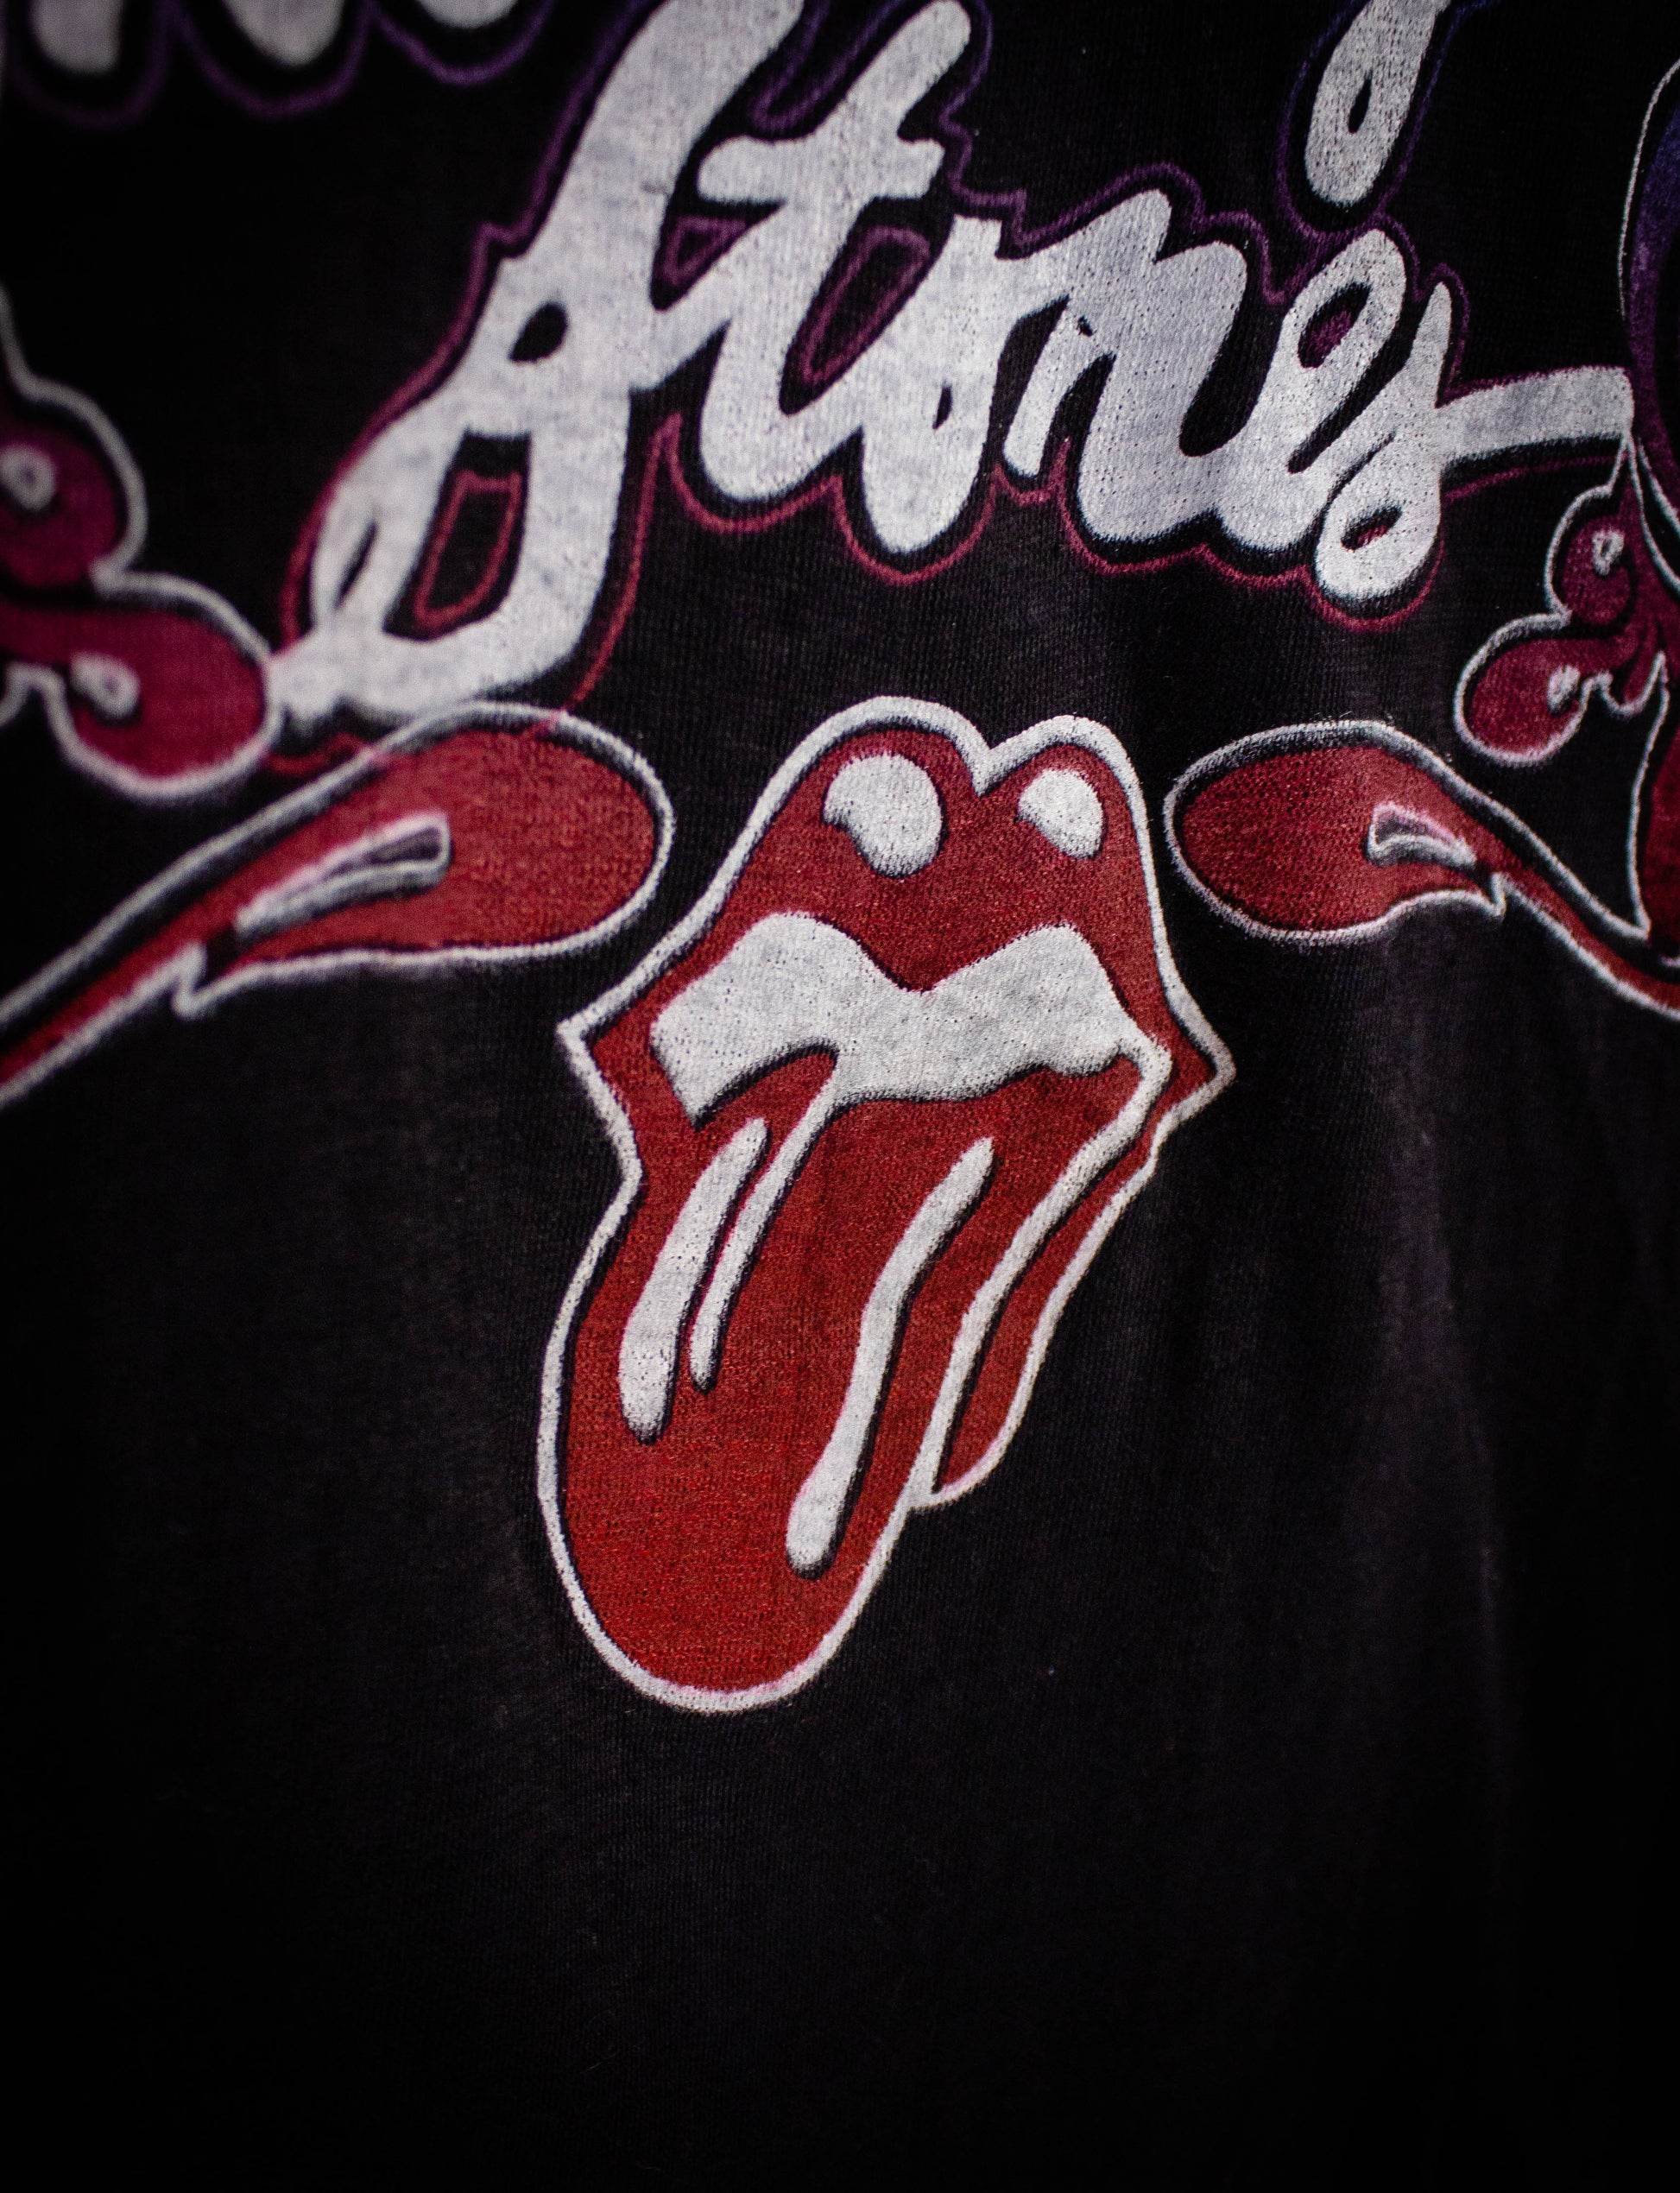 Vintage Rolling Stones Tour of '78 Concert T Shirt 1978 Black XS